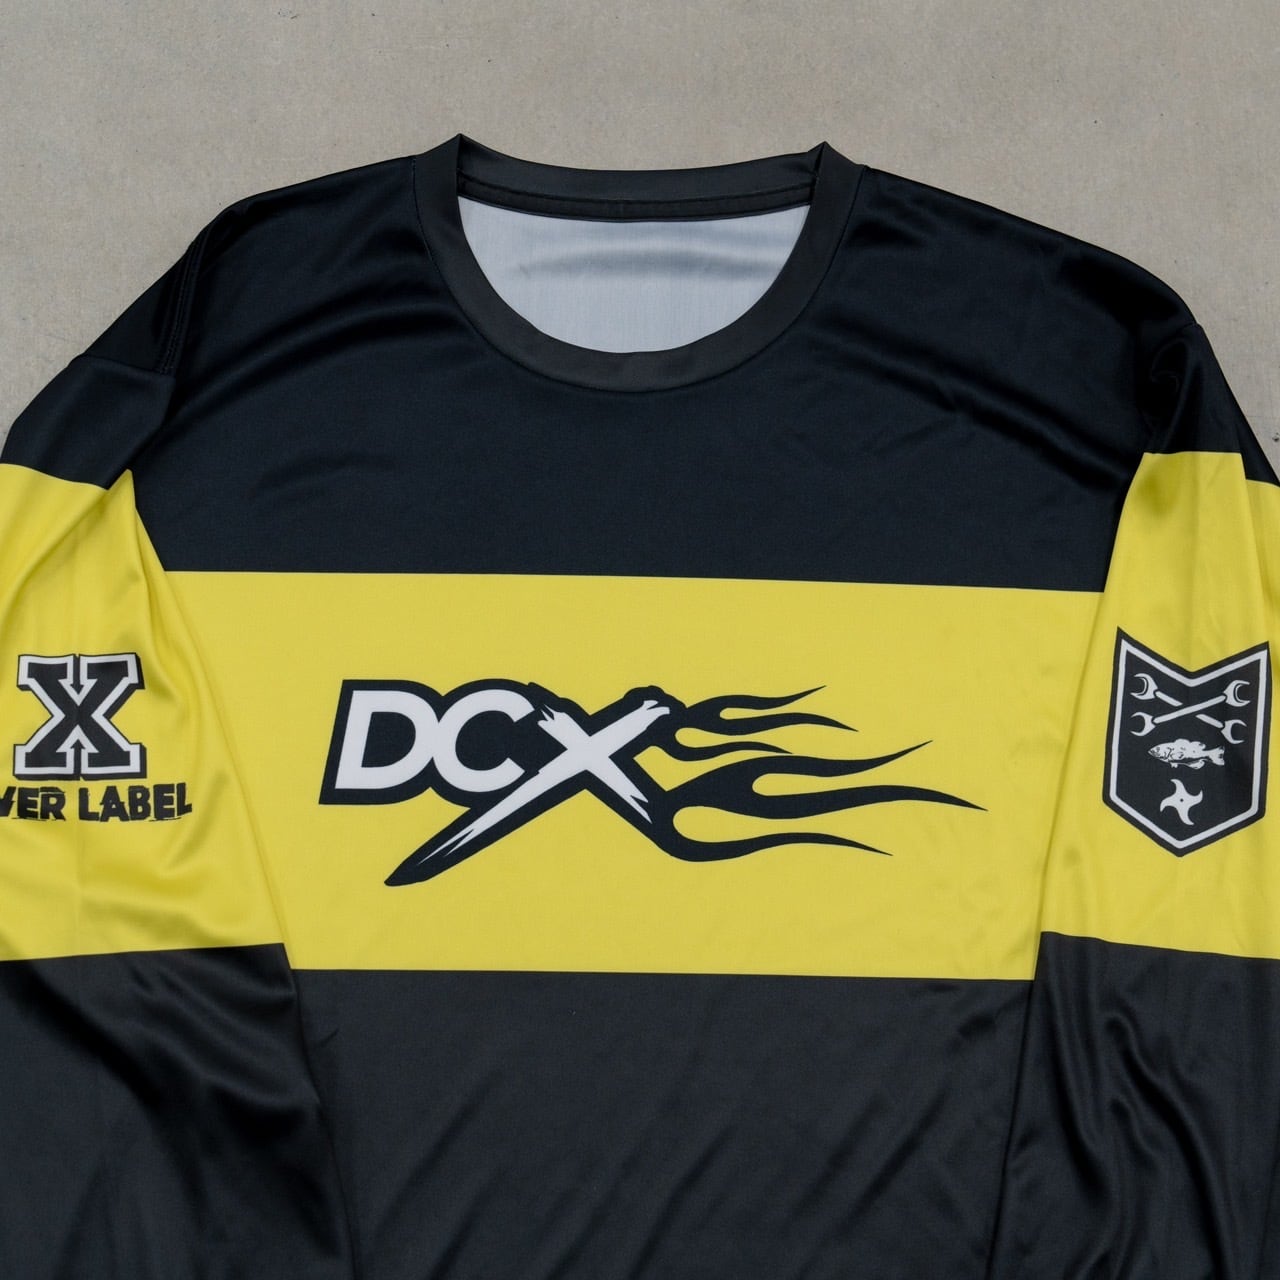 DCX ドライロングスリーブ Tシャツ ブラック - Tシャツ